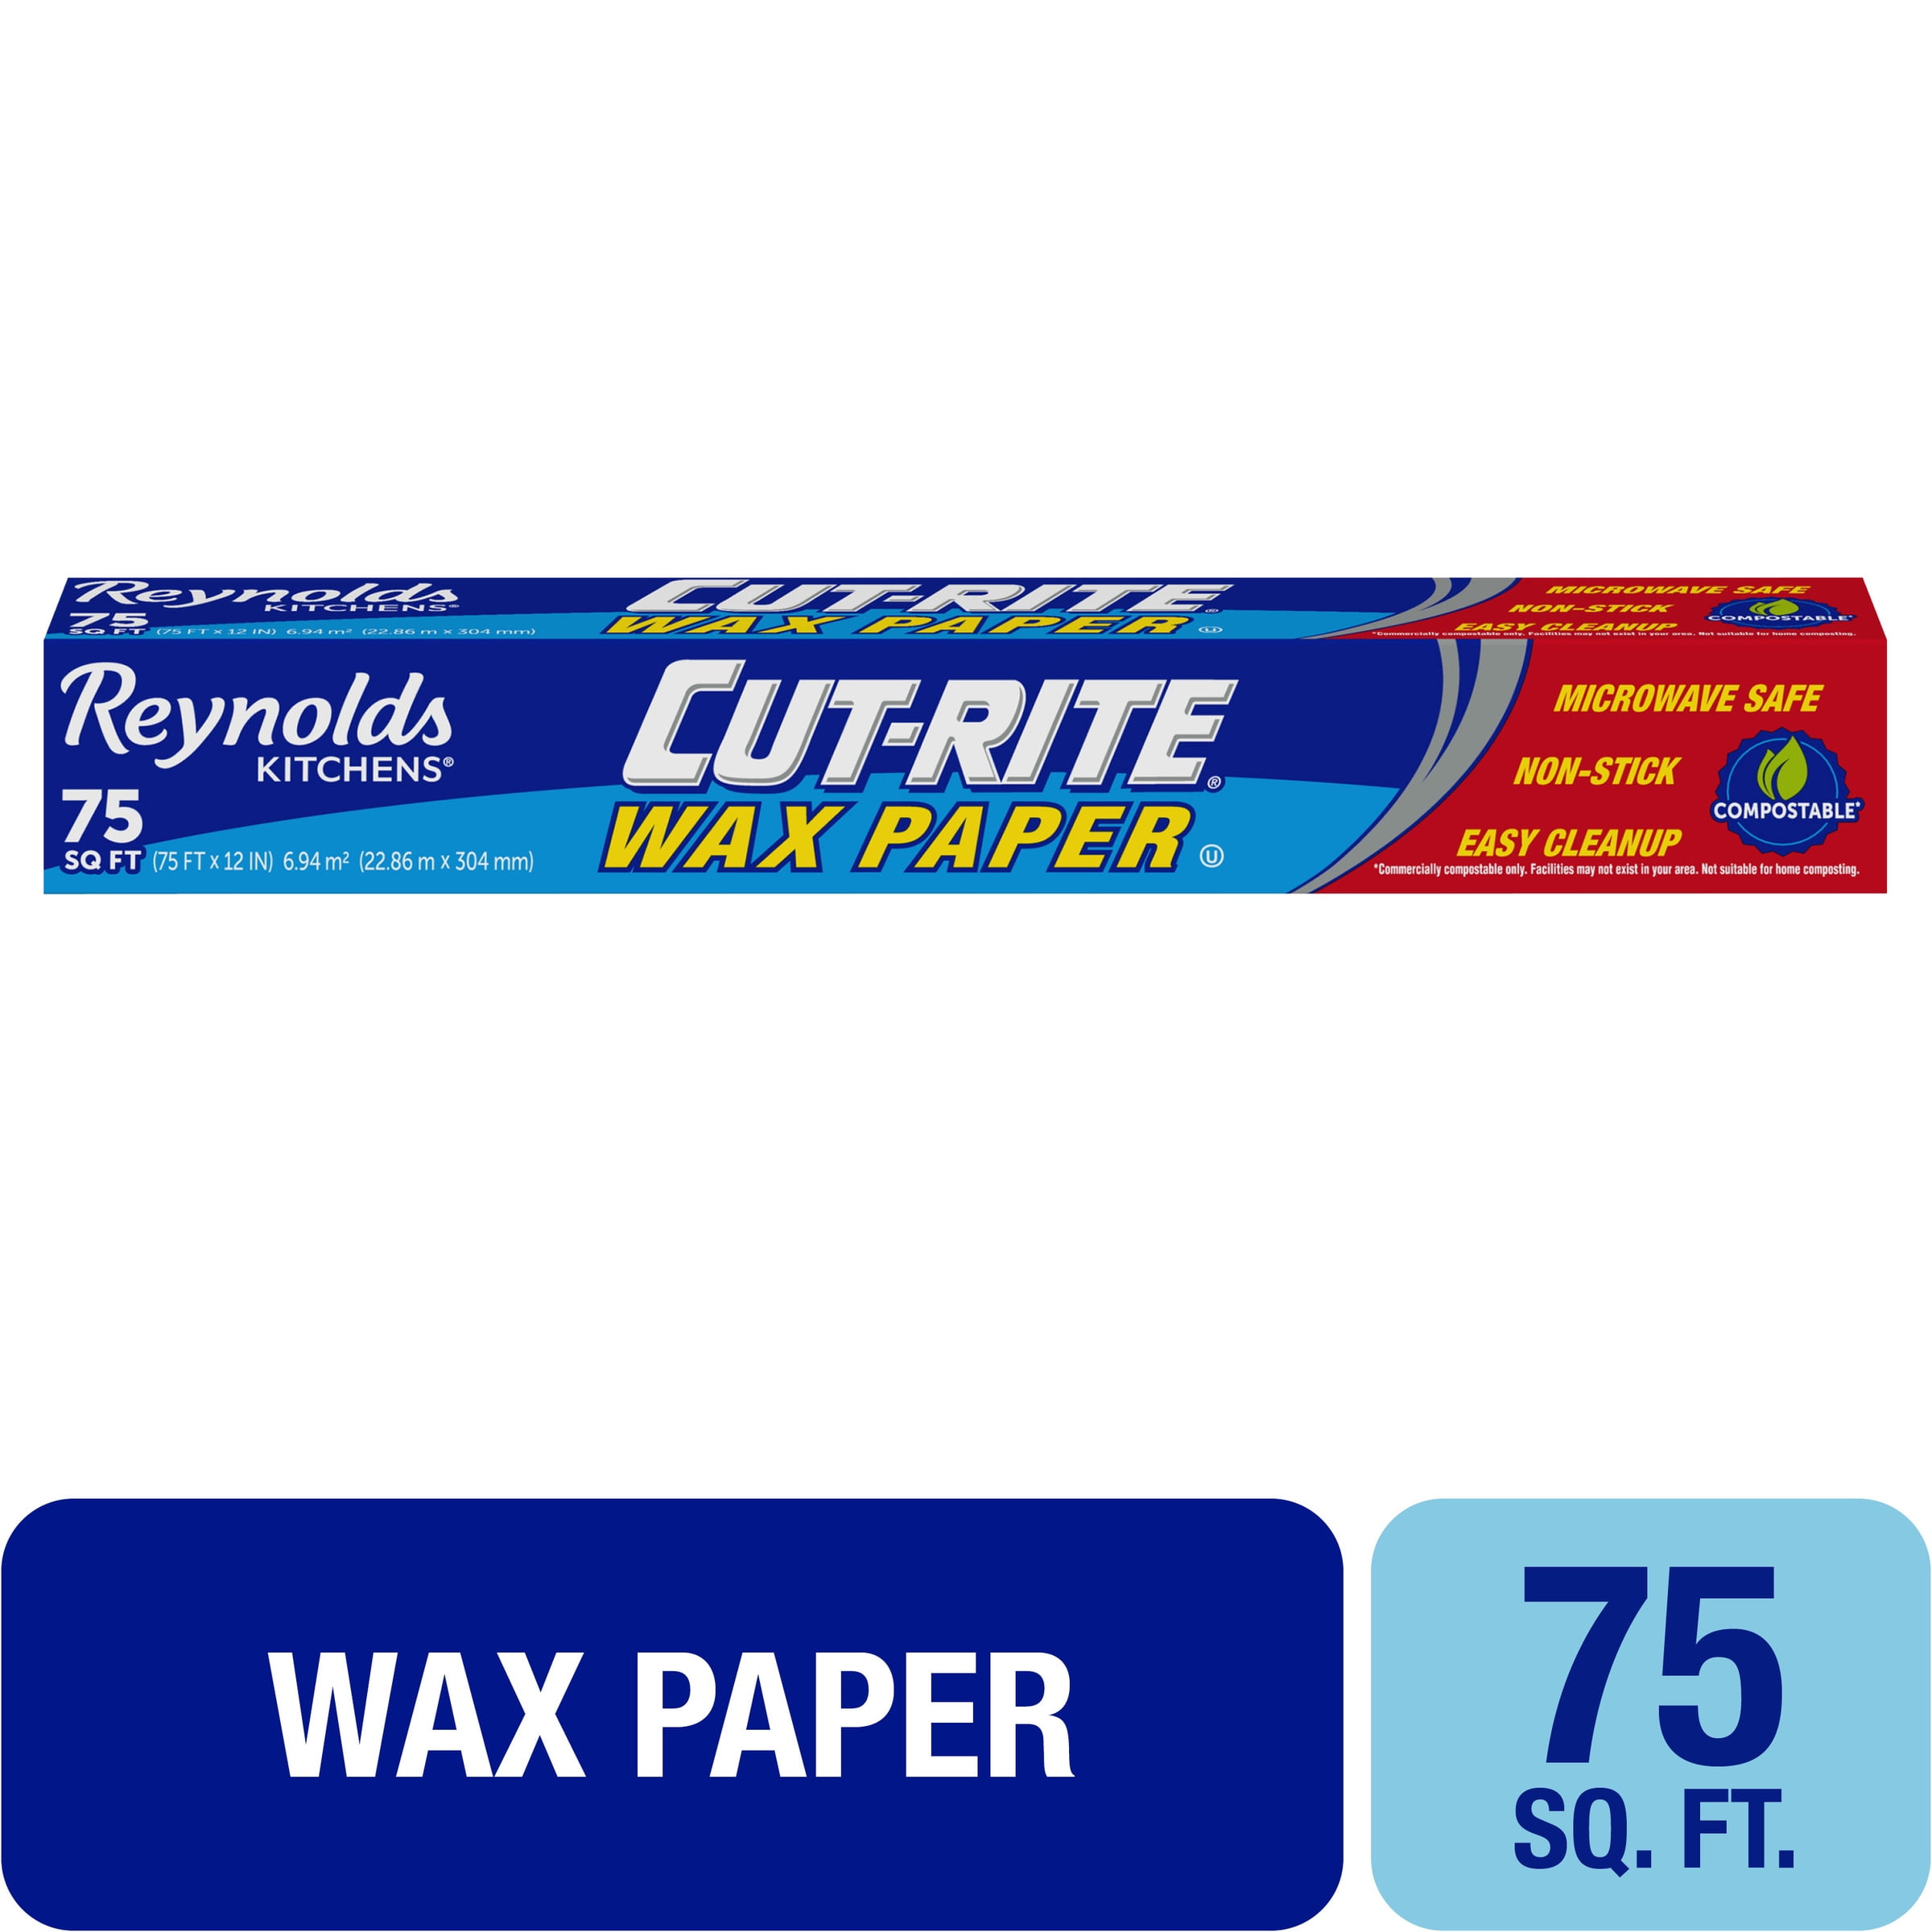 Reynolds Cut-rite Wax Paper - 75 Sq Ft : Target